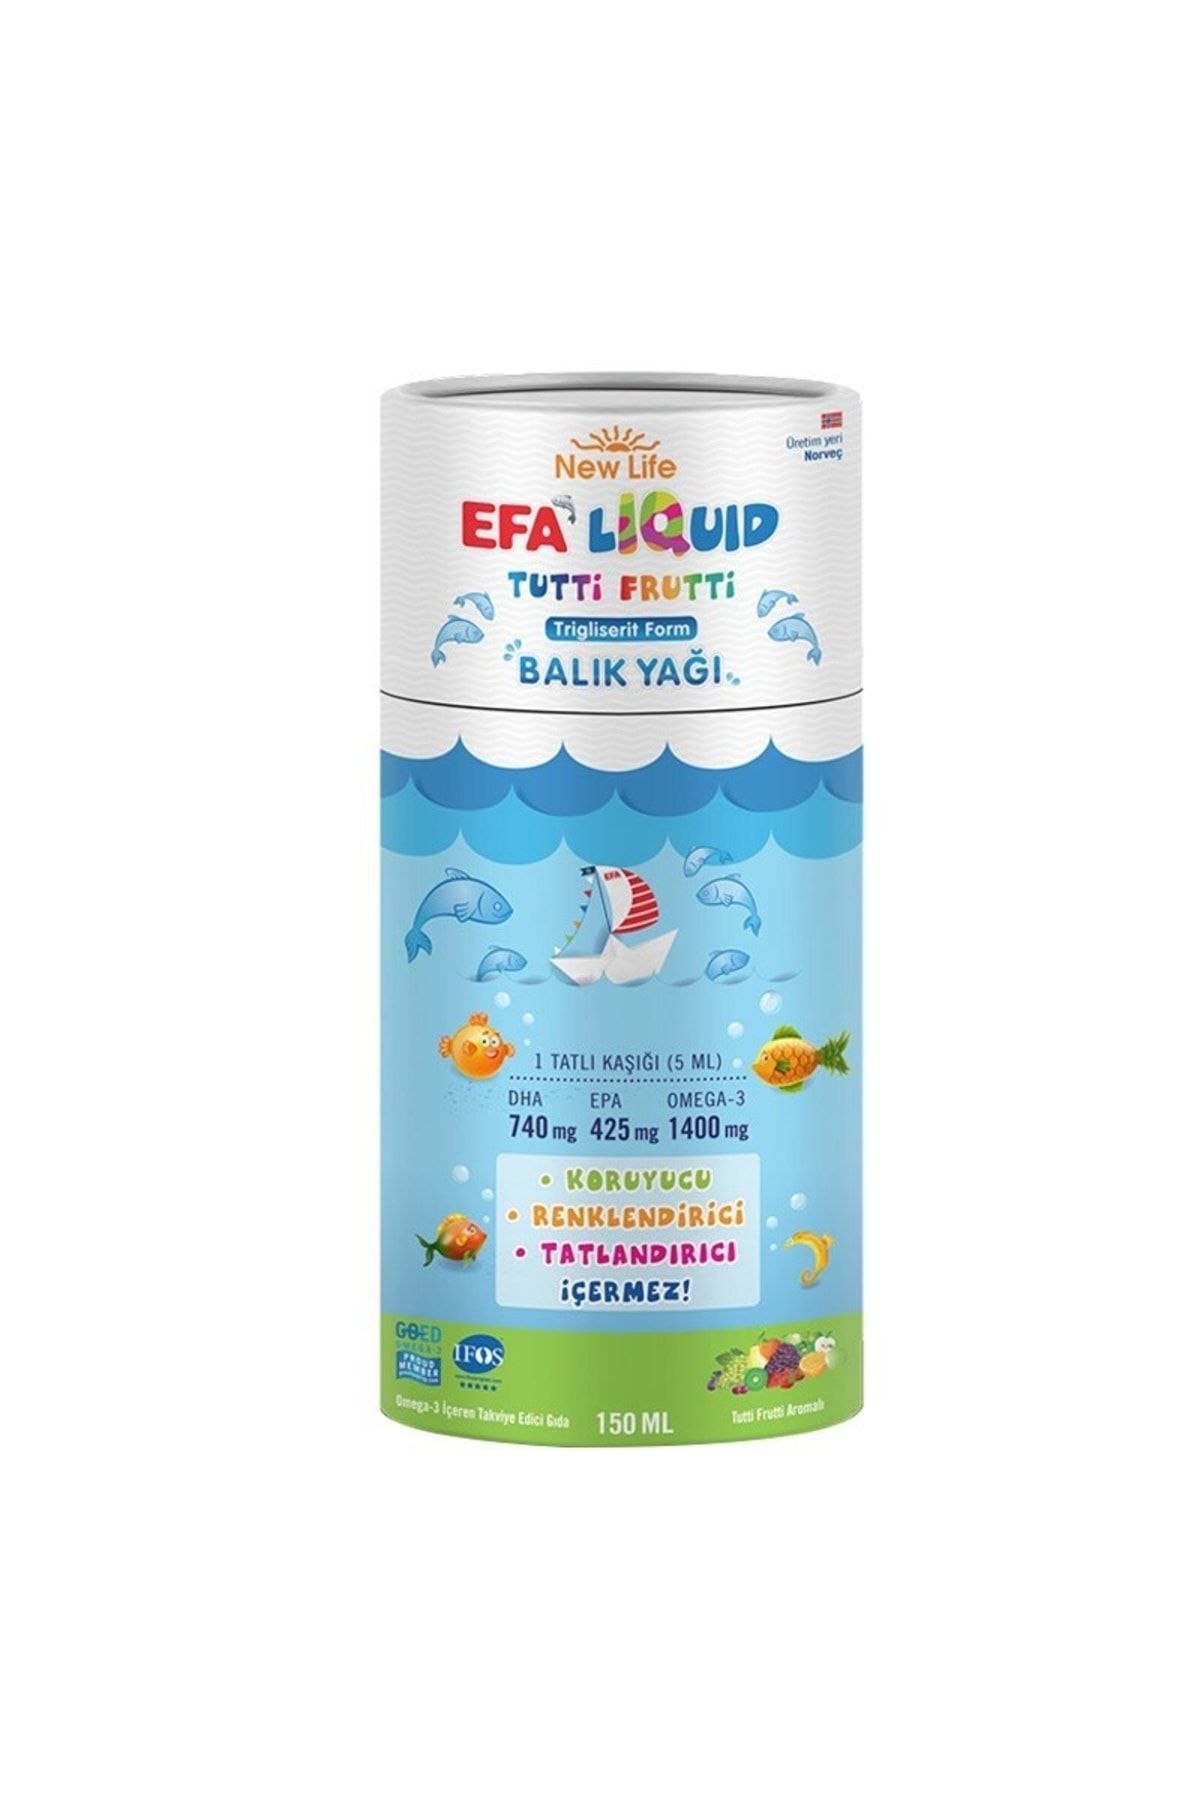 New Life New Life Efa Liquid Tutti Frutti Balık Yağı Şurubu 150ml